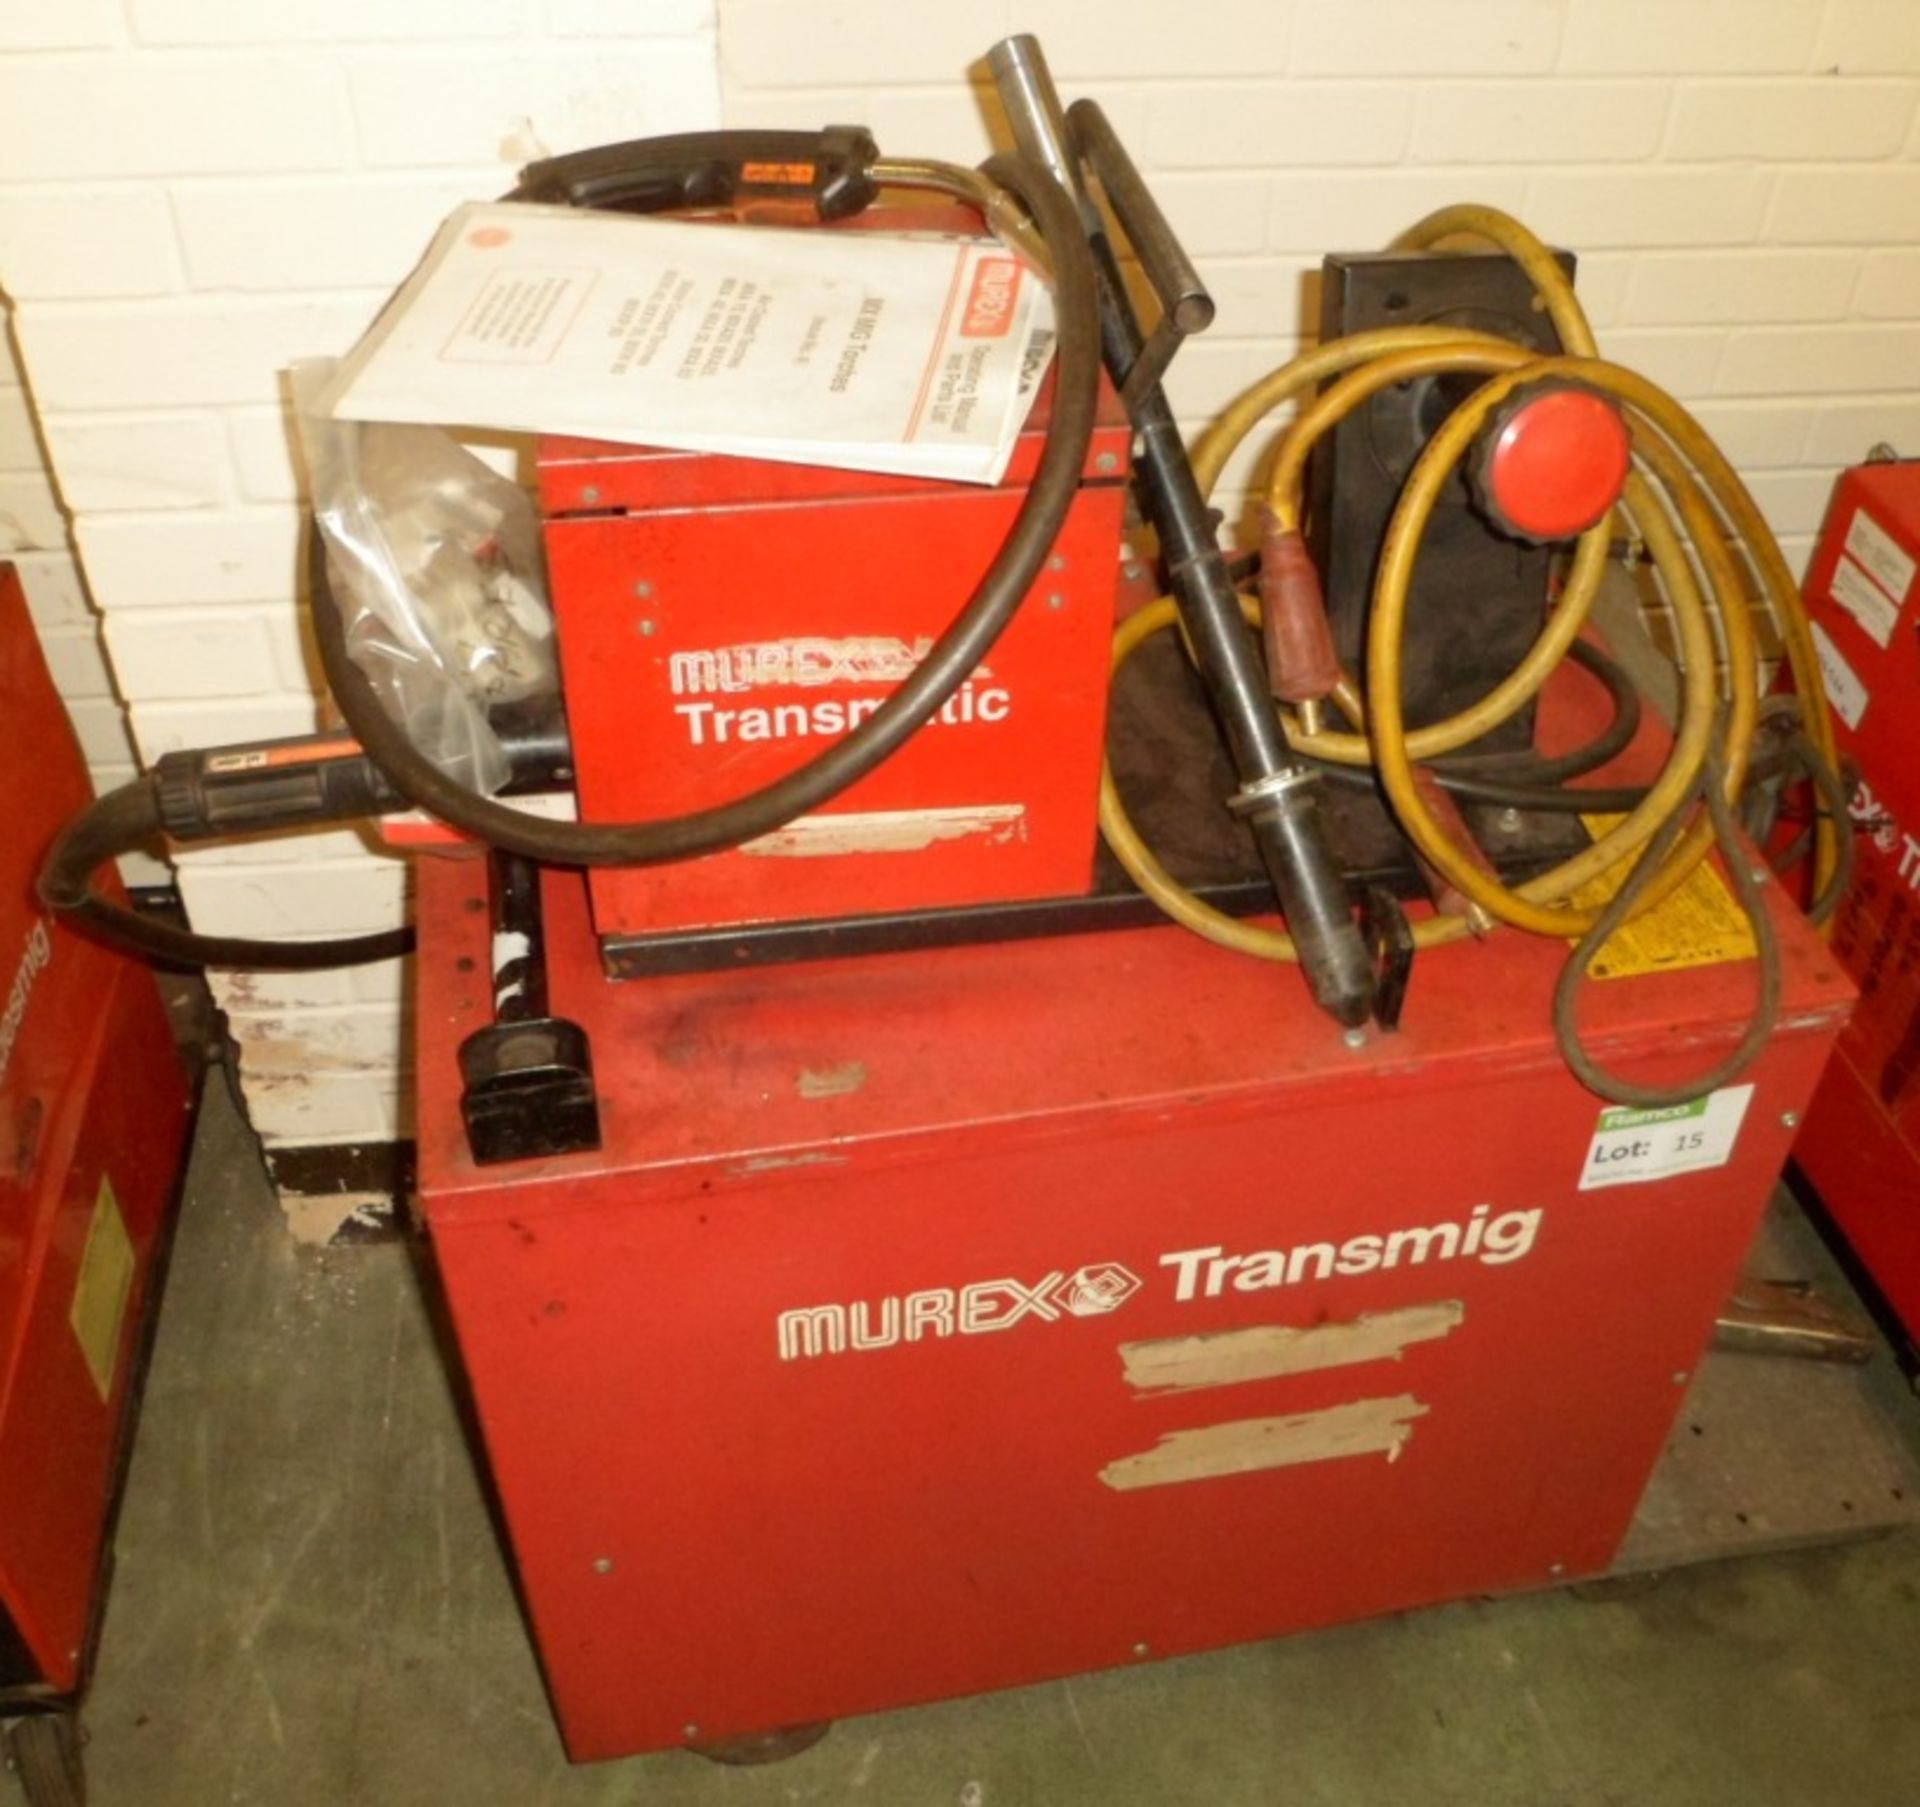 Murex Transmig 305 welder, Transmatic 2x2, accessories